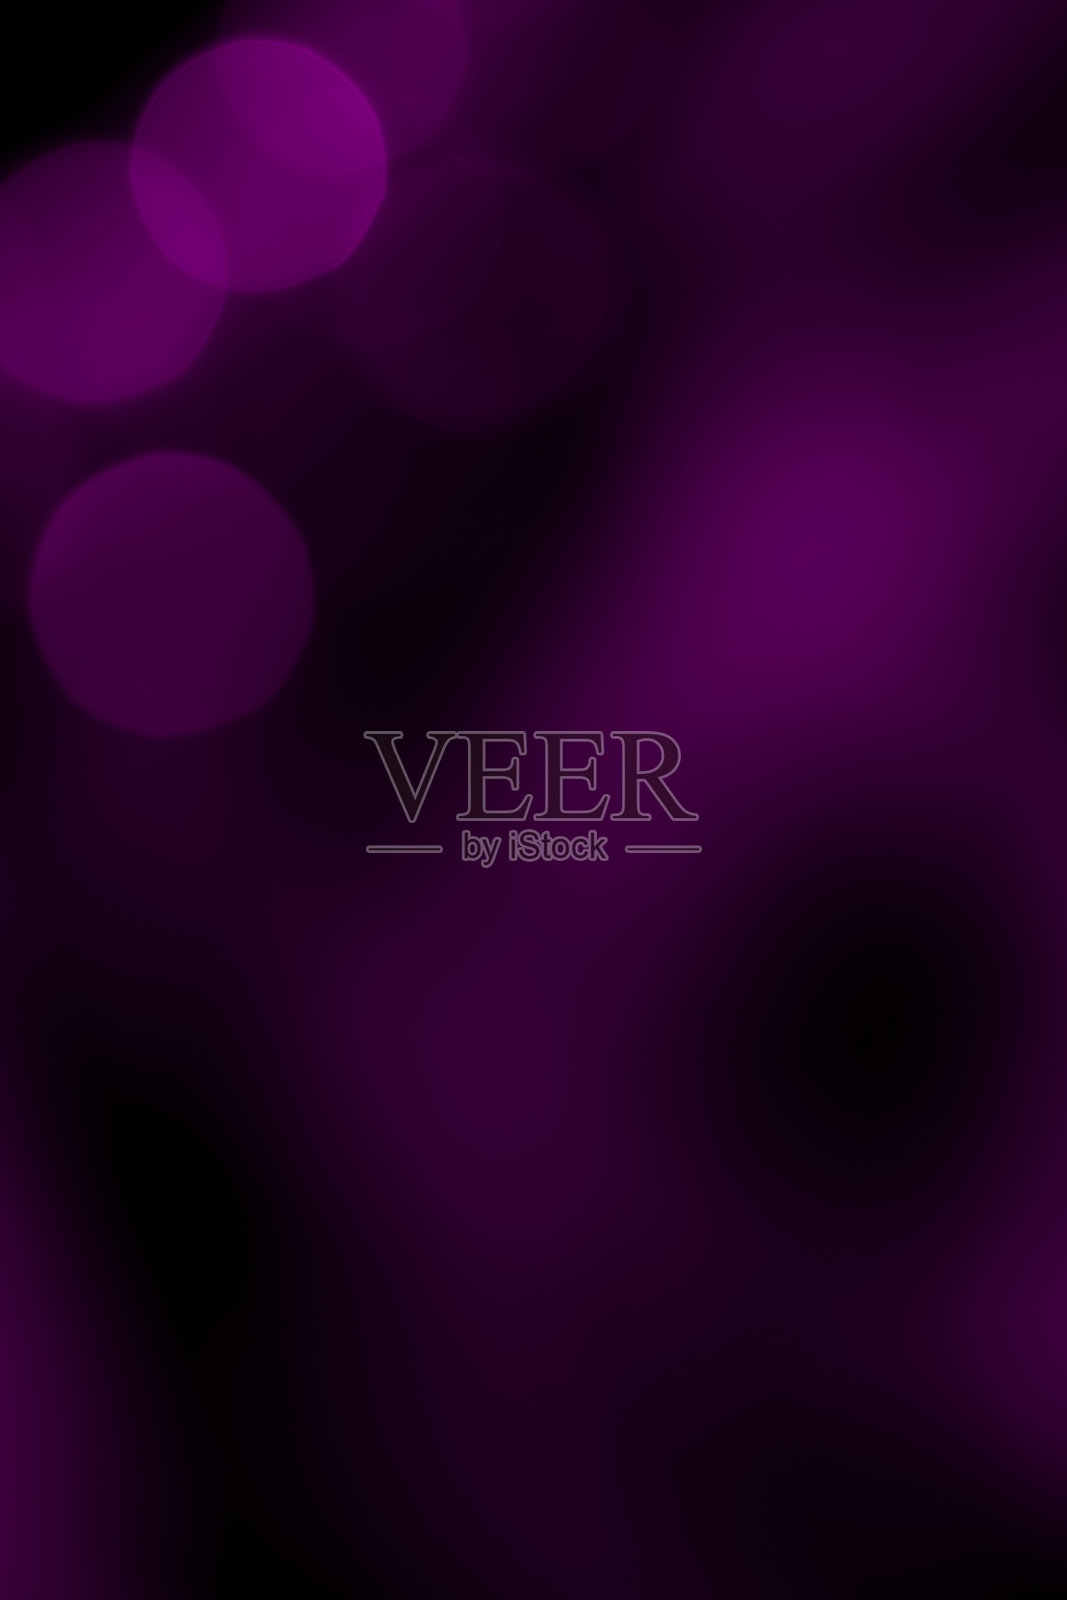 散焦灯光背景(紫色)-高分辨率5000万像素插画图片素材